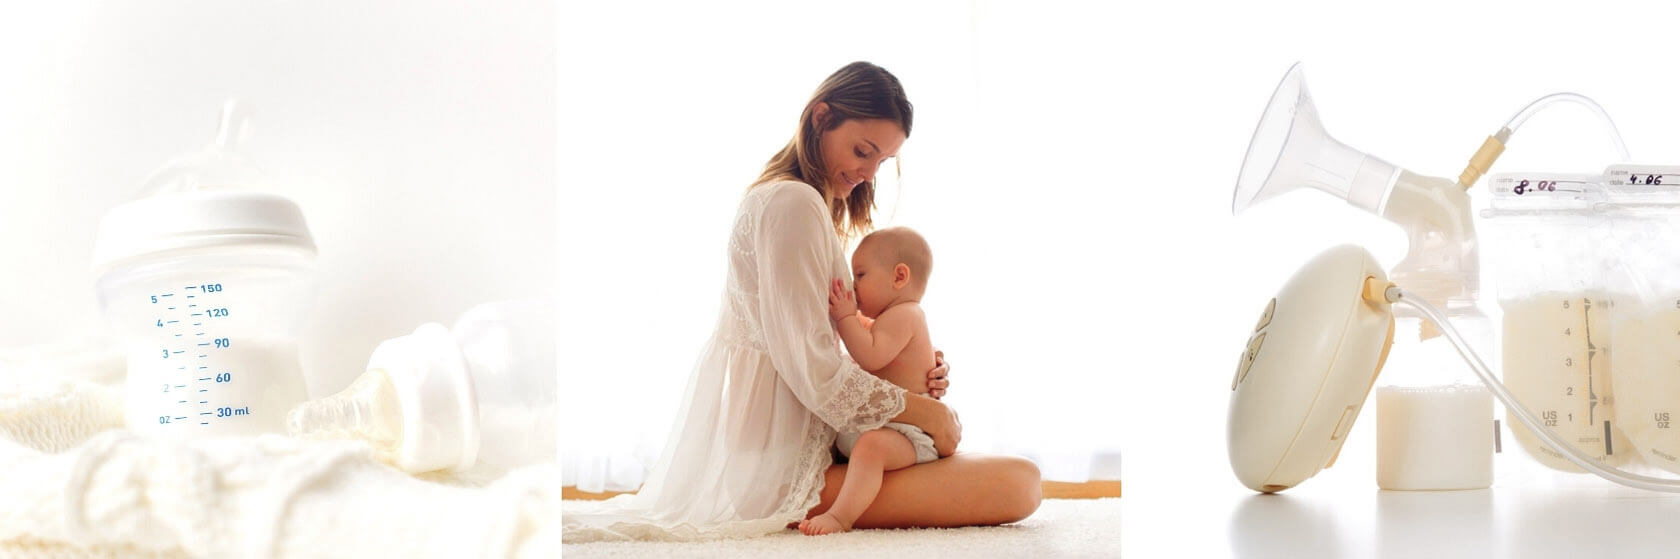 Польза грудного вскармливания для мамы и ребенка thumbnail